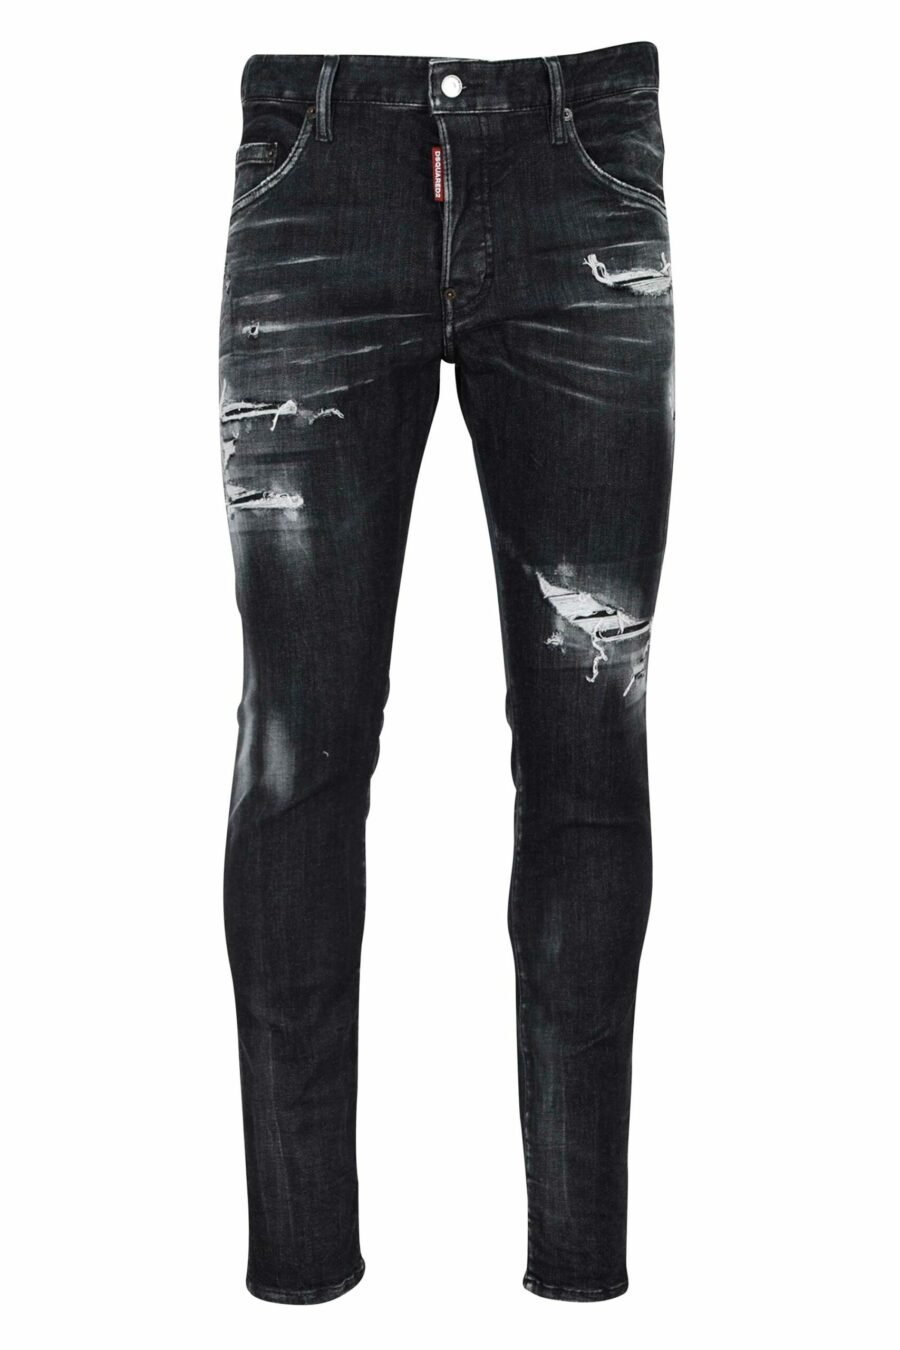 Skater-Jeans-Hose schwarz mit Rissen und semi-getragen - 8054148101411 skaliert